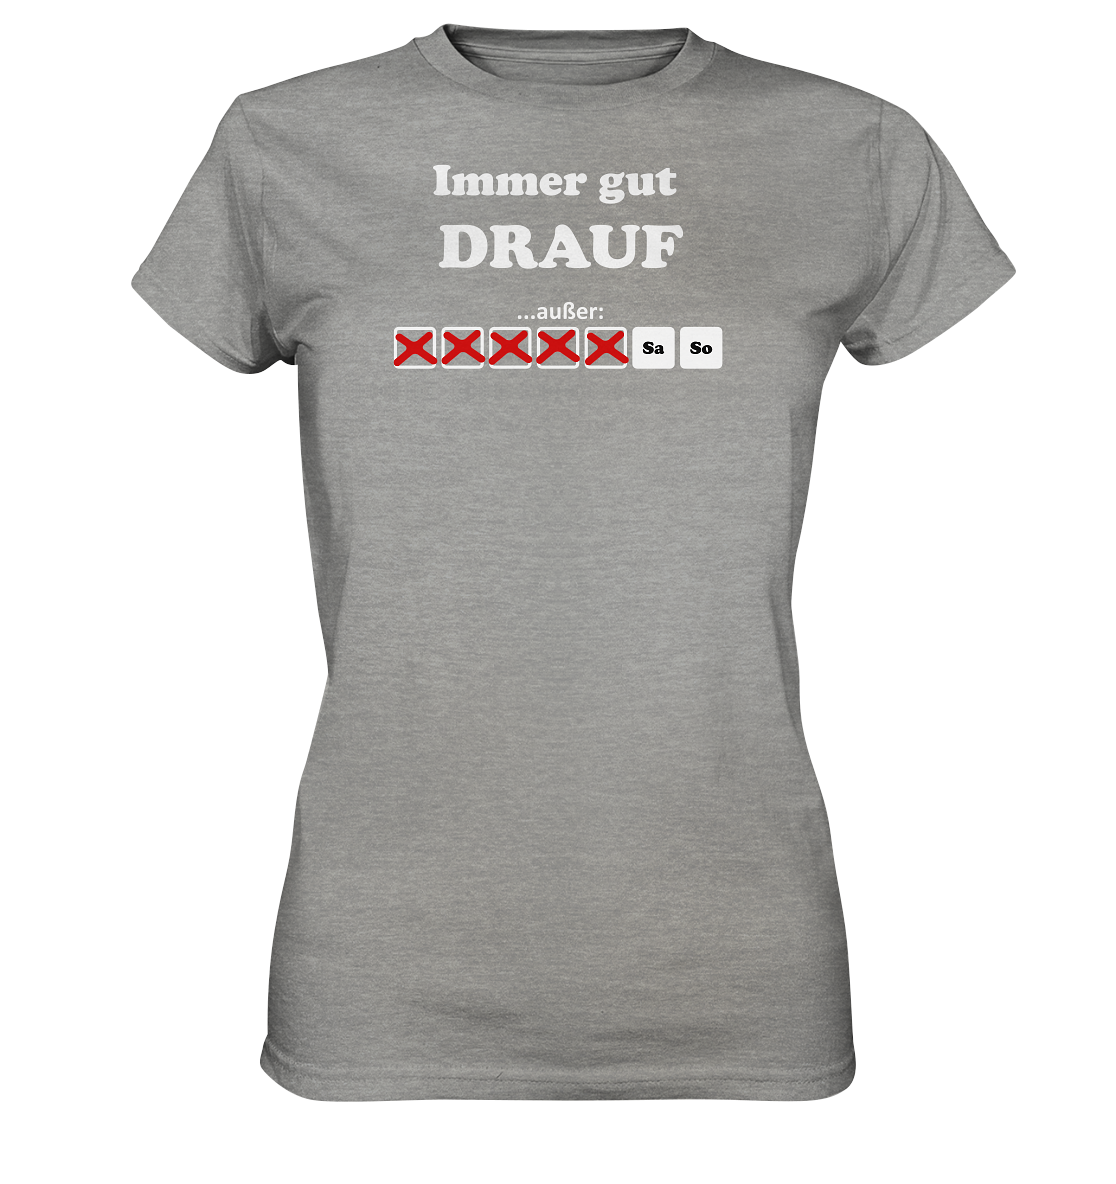 Immer gut drauf - Geile Sprüche, geile Designs - Ladies Premium Shirt